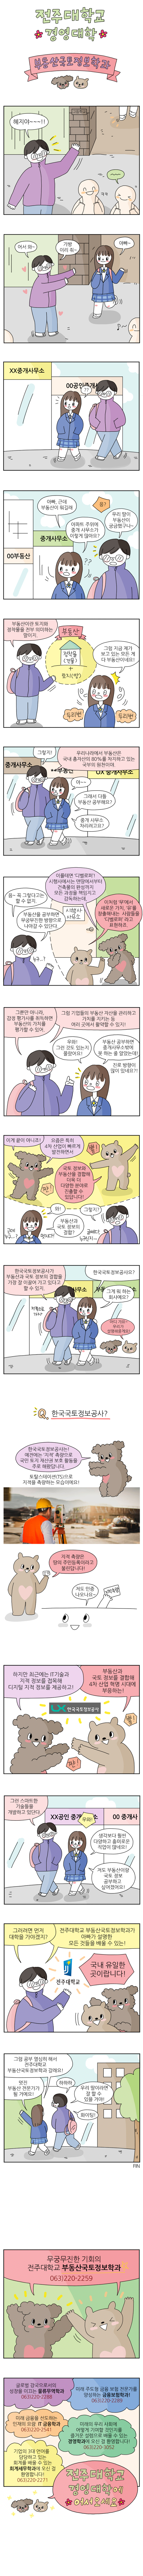 부동산국토정보학과 소개 웹툰